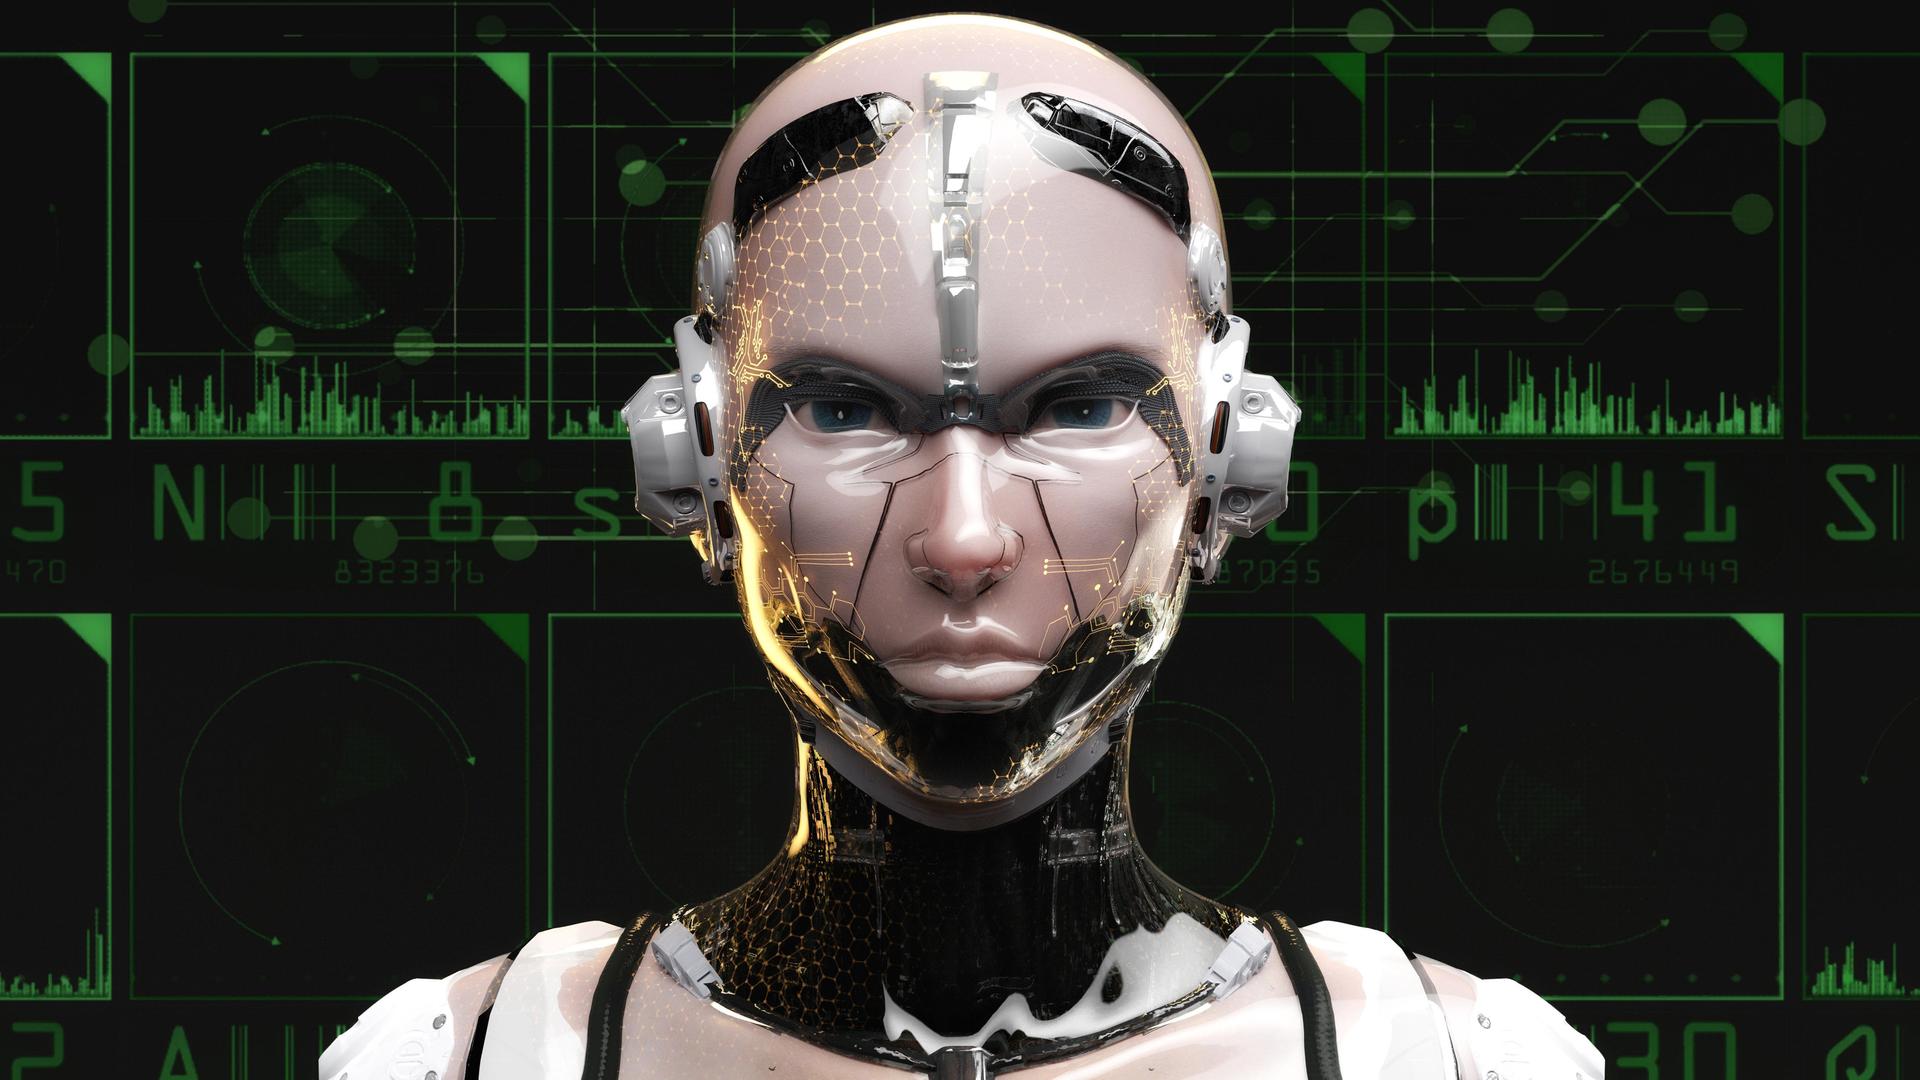 Künstlerische Darstellung eines humanoiden Roboters mit künstlicher Intelligenz.